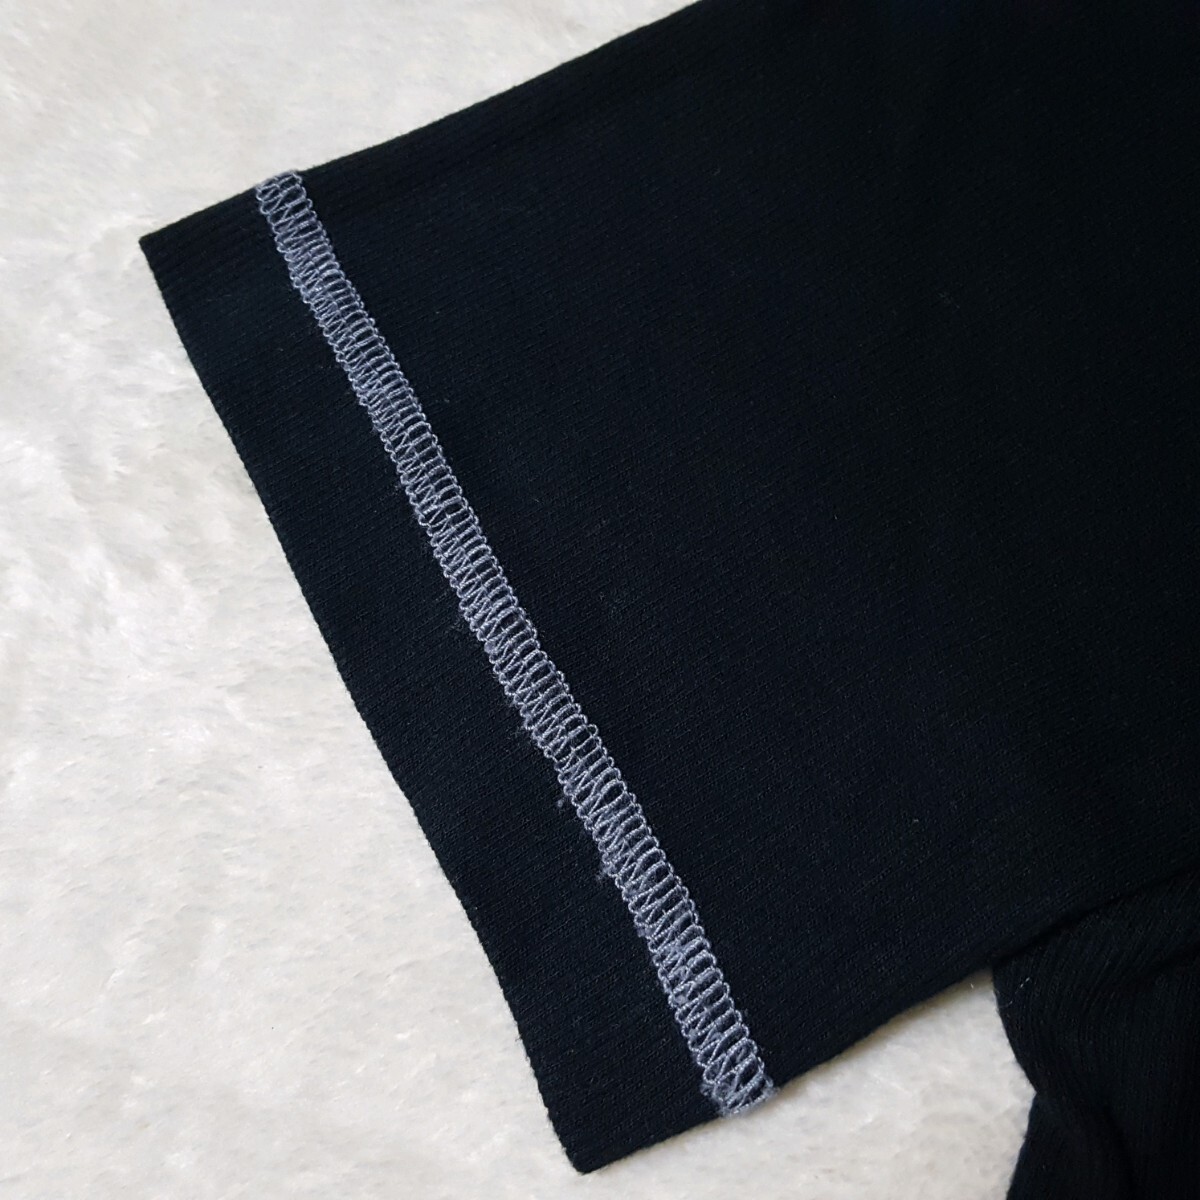 [ превосходный товар ]BURBERRY BLACK LABEL Burberry Black Label шланг вышивка noba проверка термический застежка с планкой футболка cut and sewn чёрный M